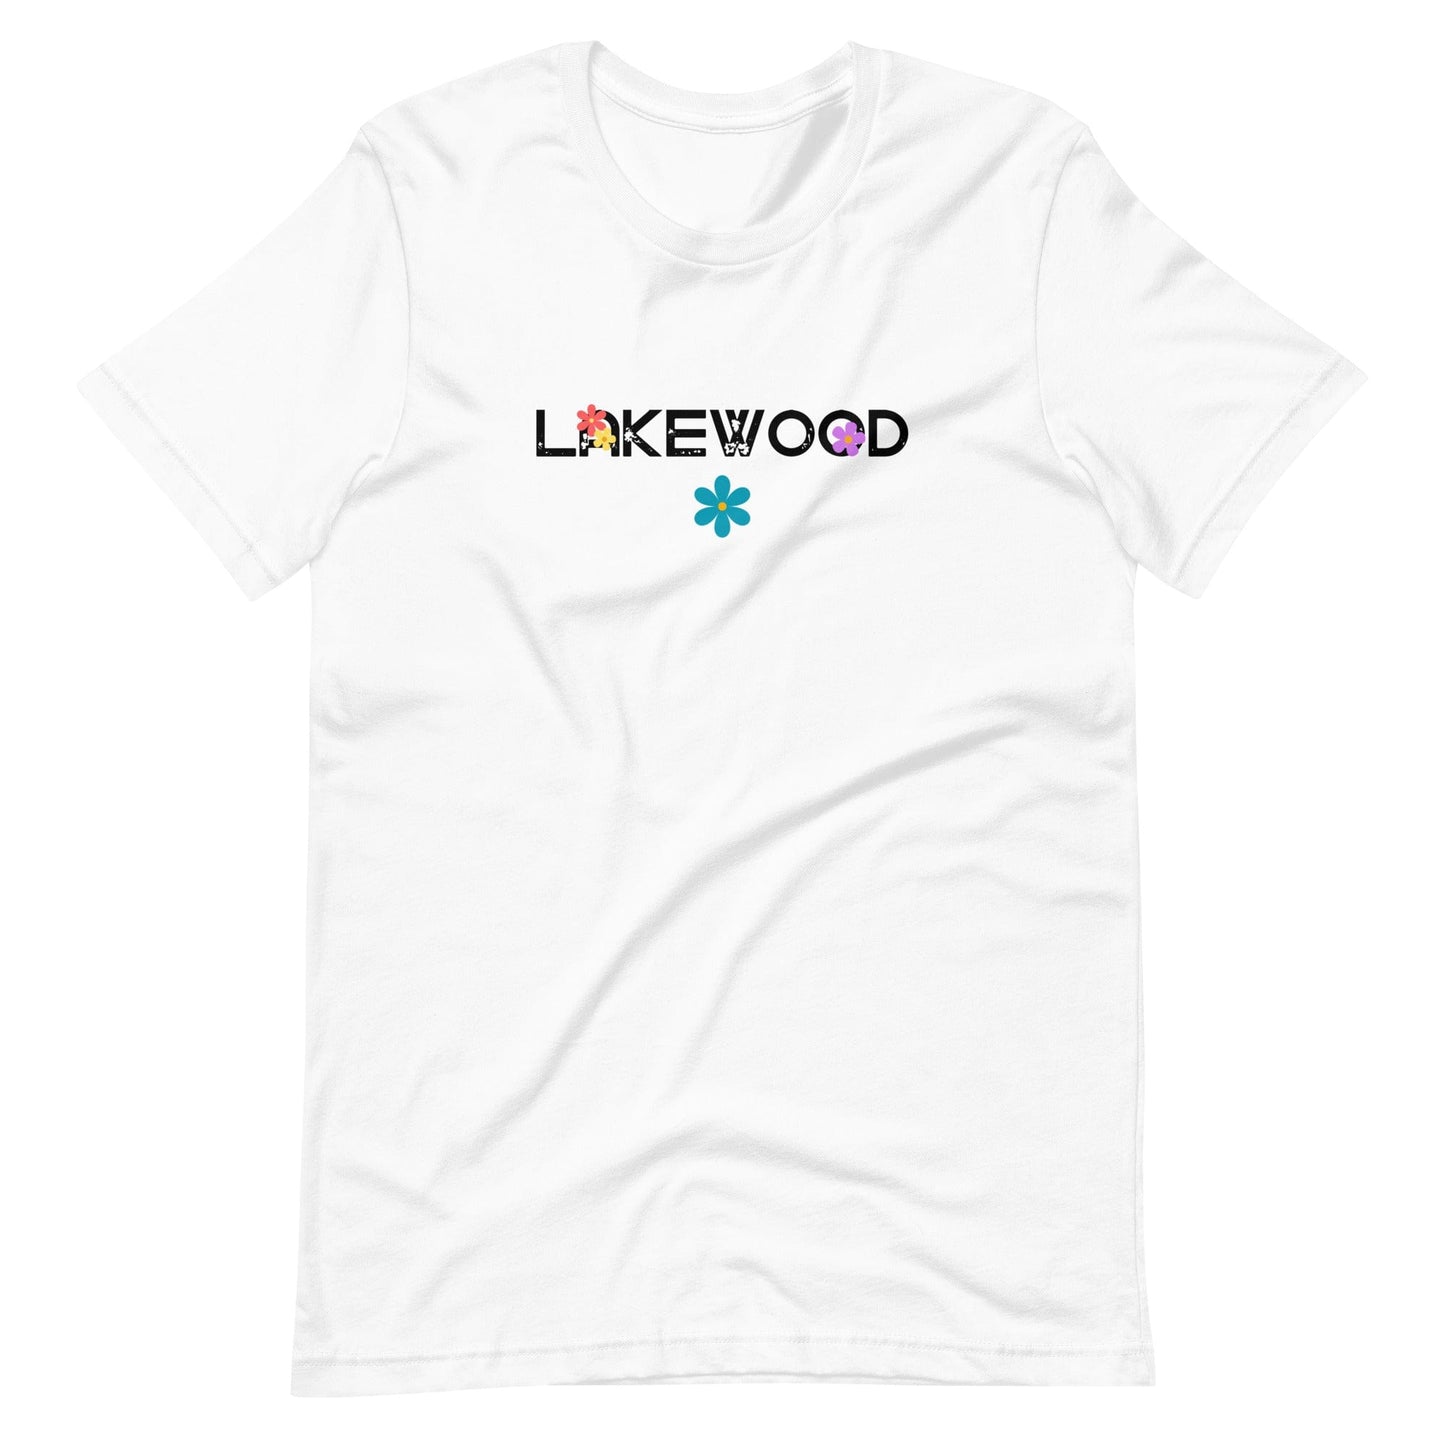 Lakewood Flower Child Unisex T-Shirt